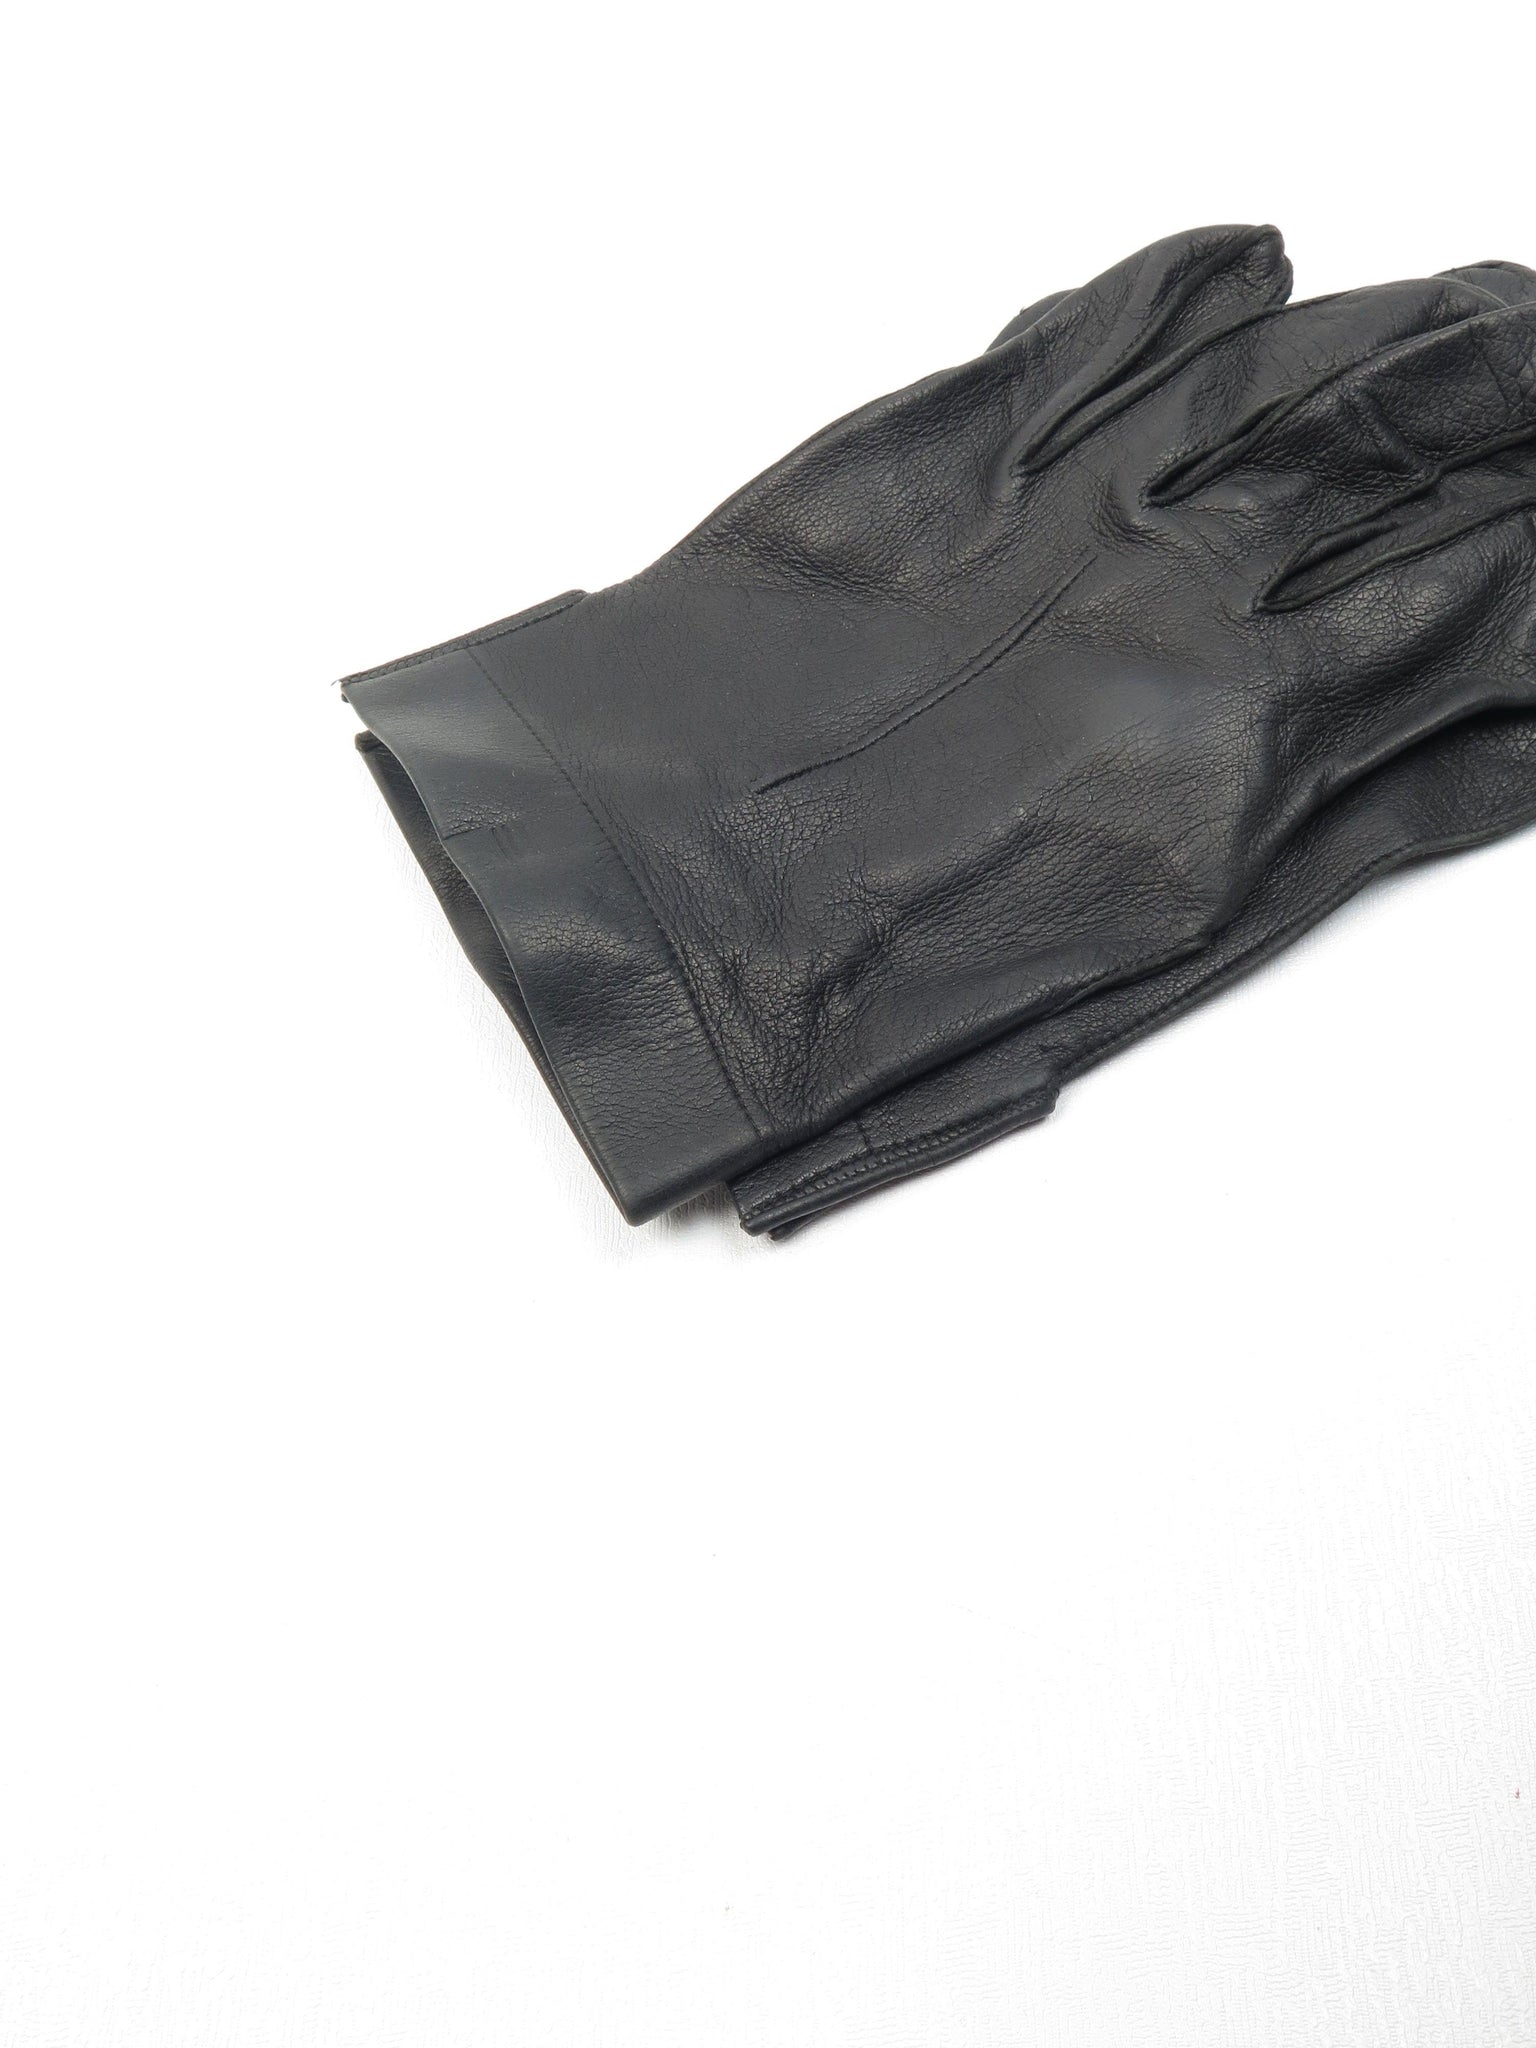 Mens Black Leather Vintage Gloves 8.5 - The Harlequin